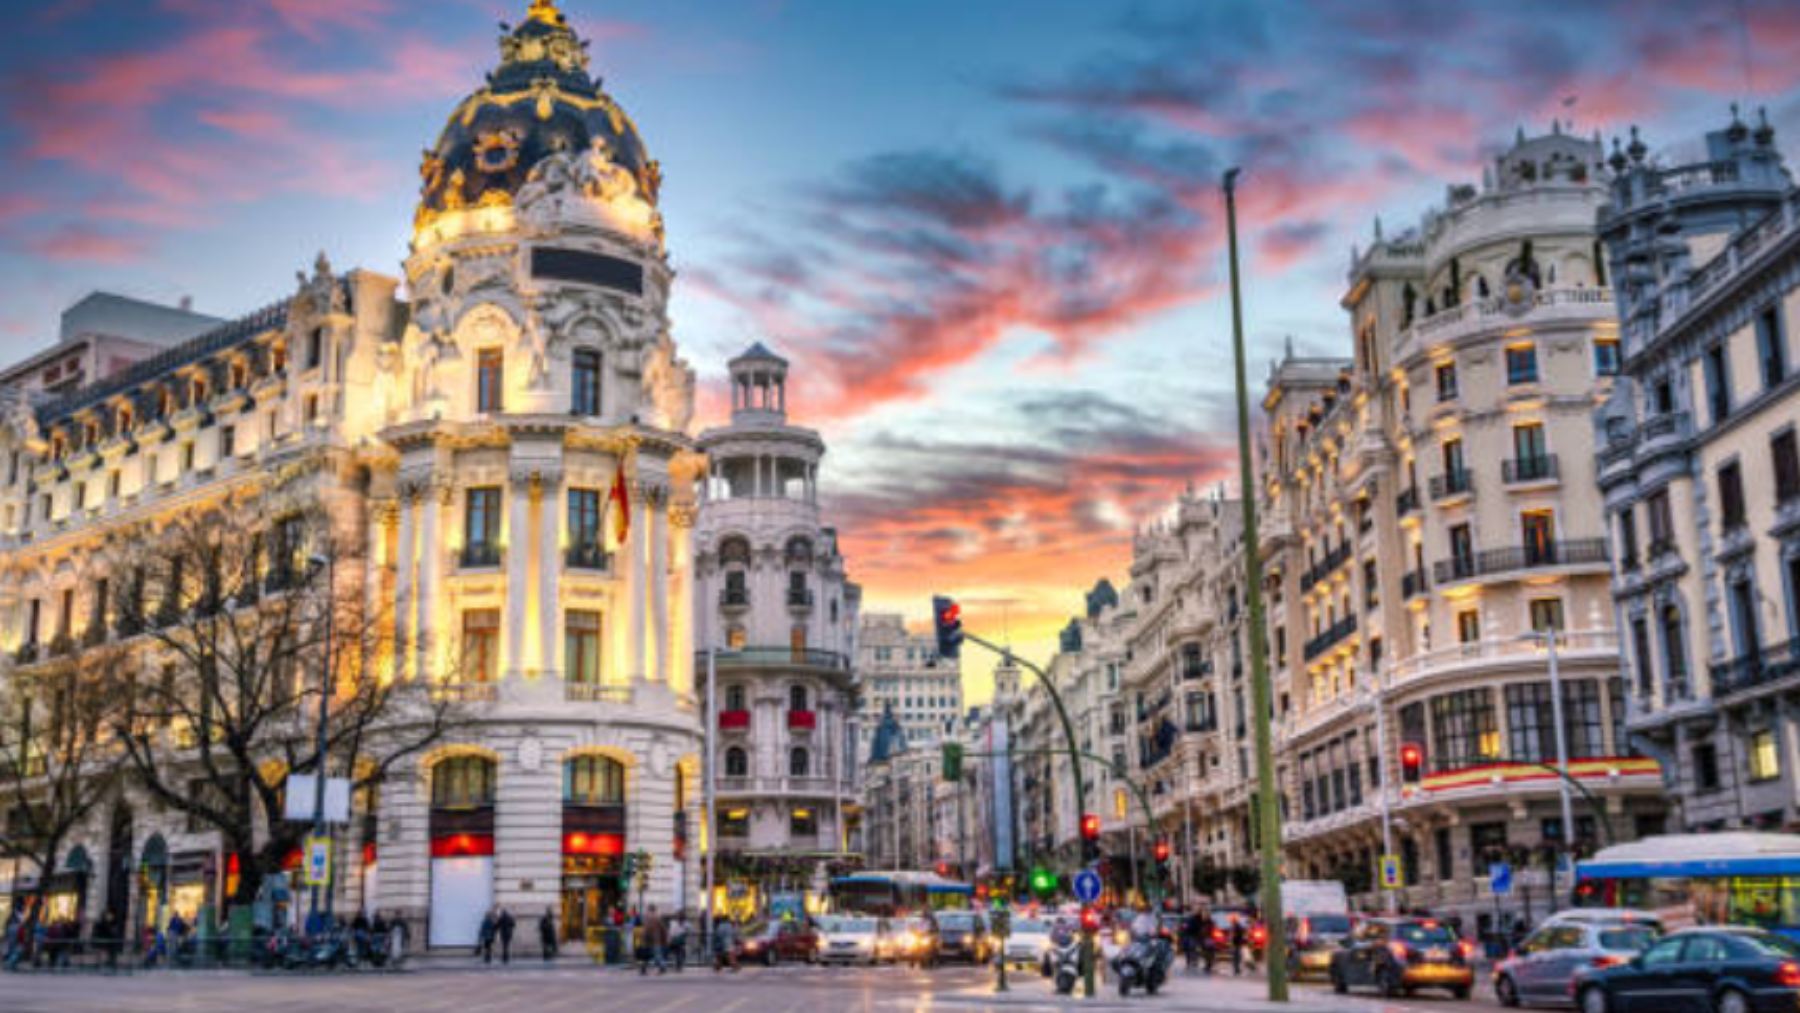 Las 10 novedades que no te puedes perder de Madrid en 2023